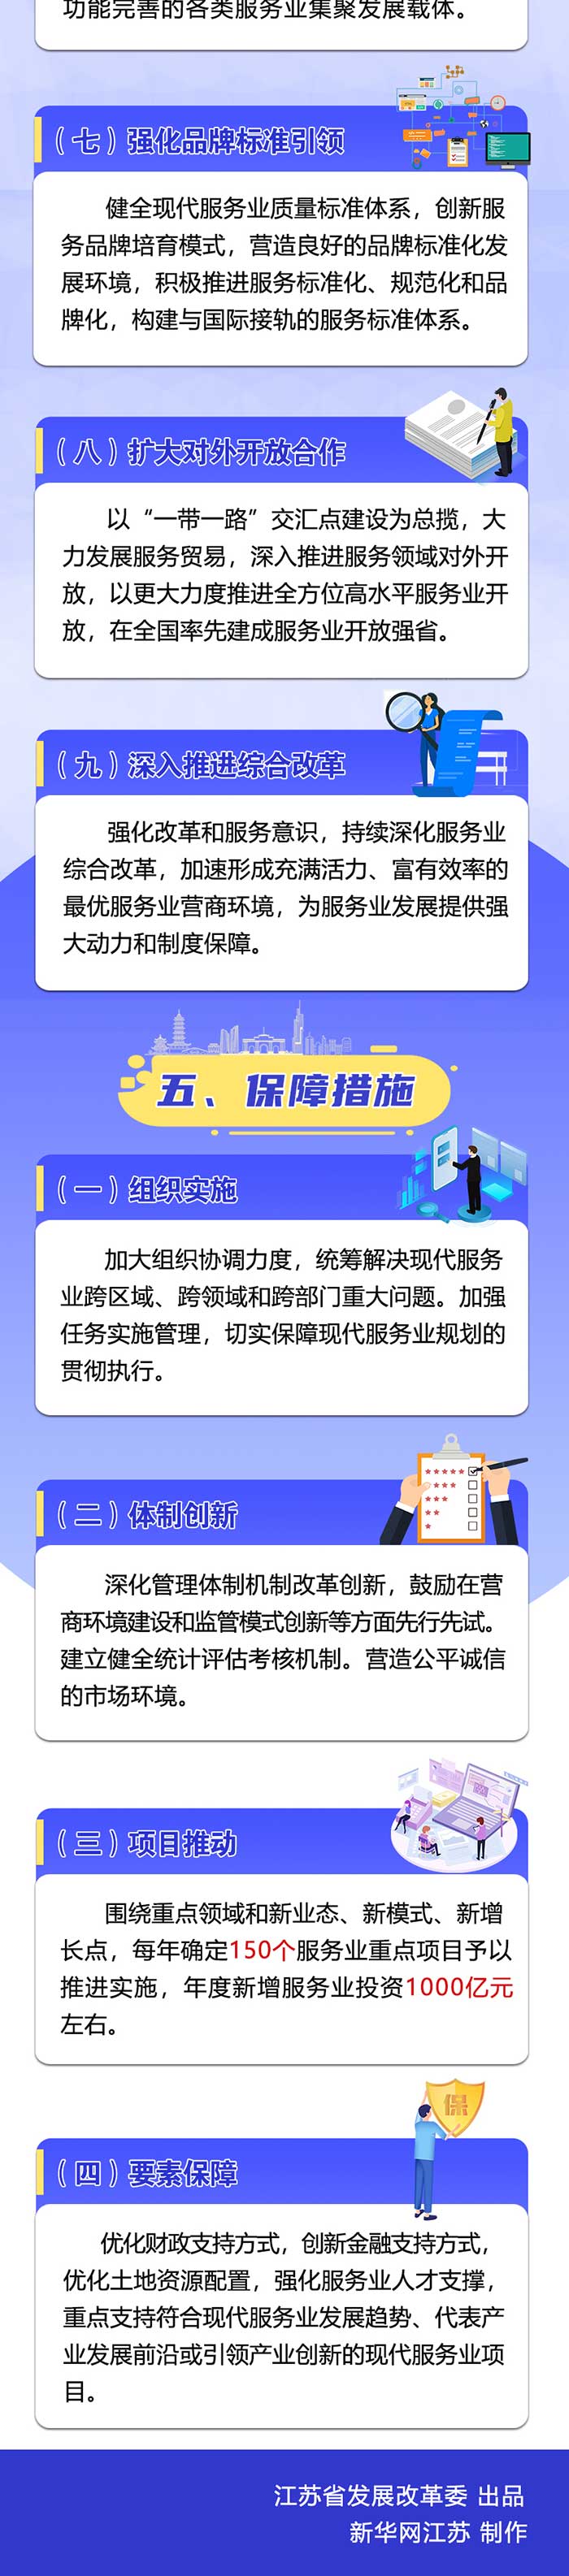 江苏省“十四五”现代服务业发展规划